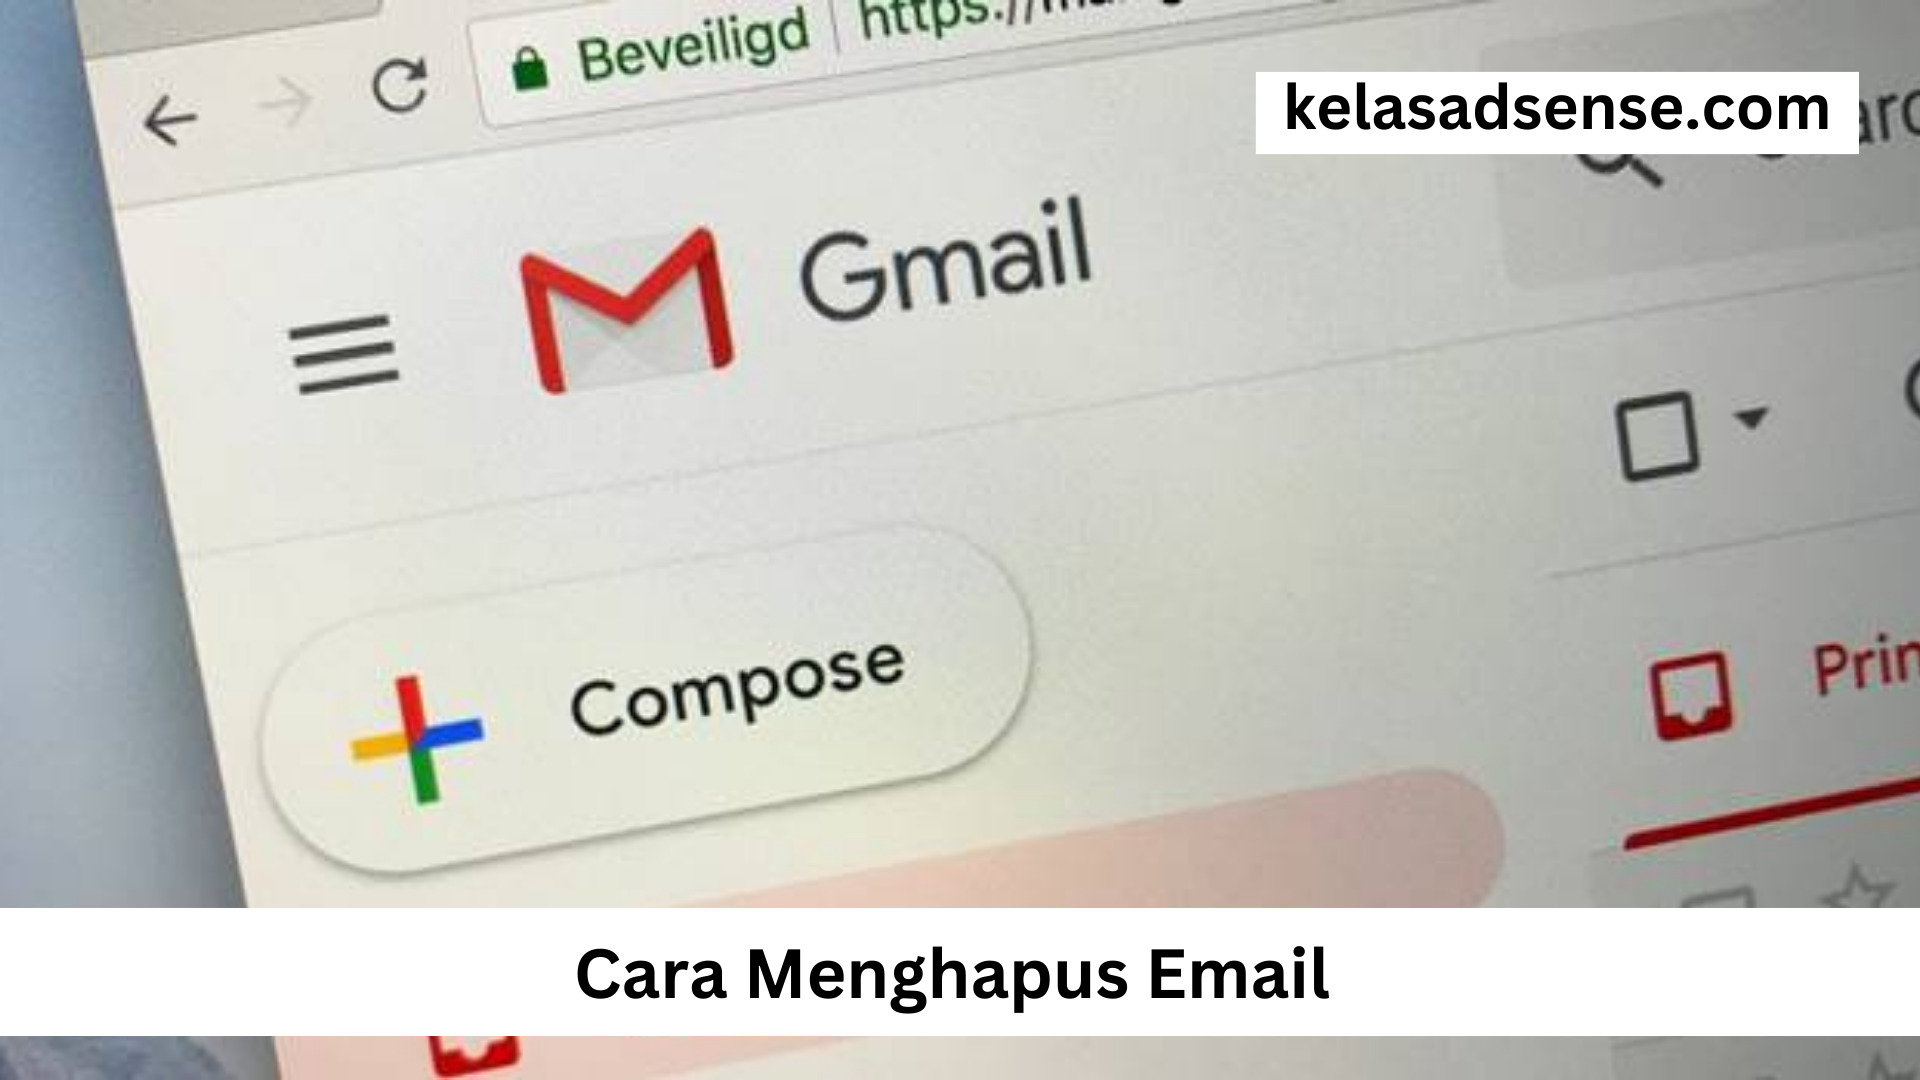 Cara Menghapus Email